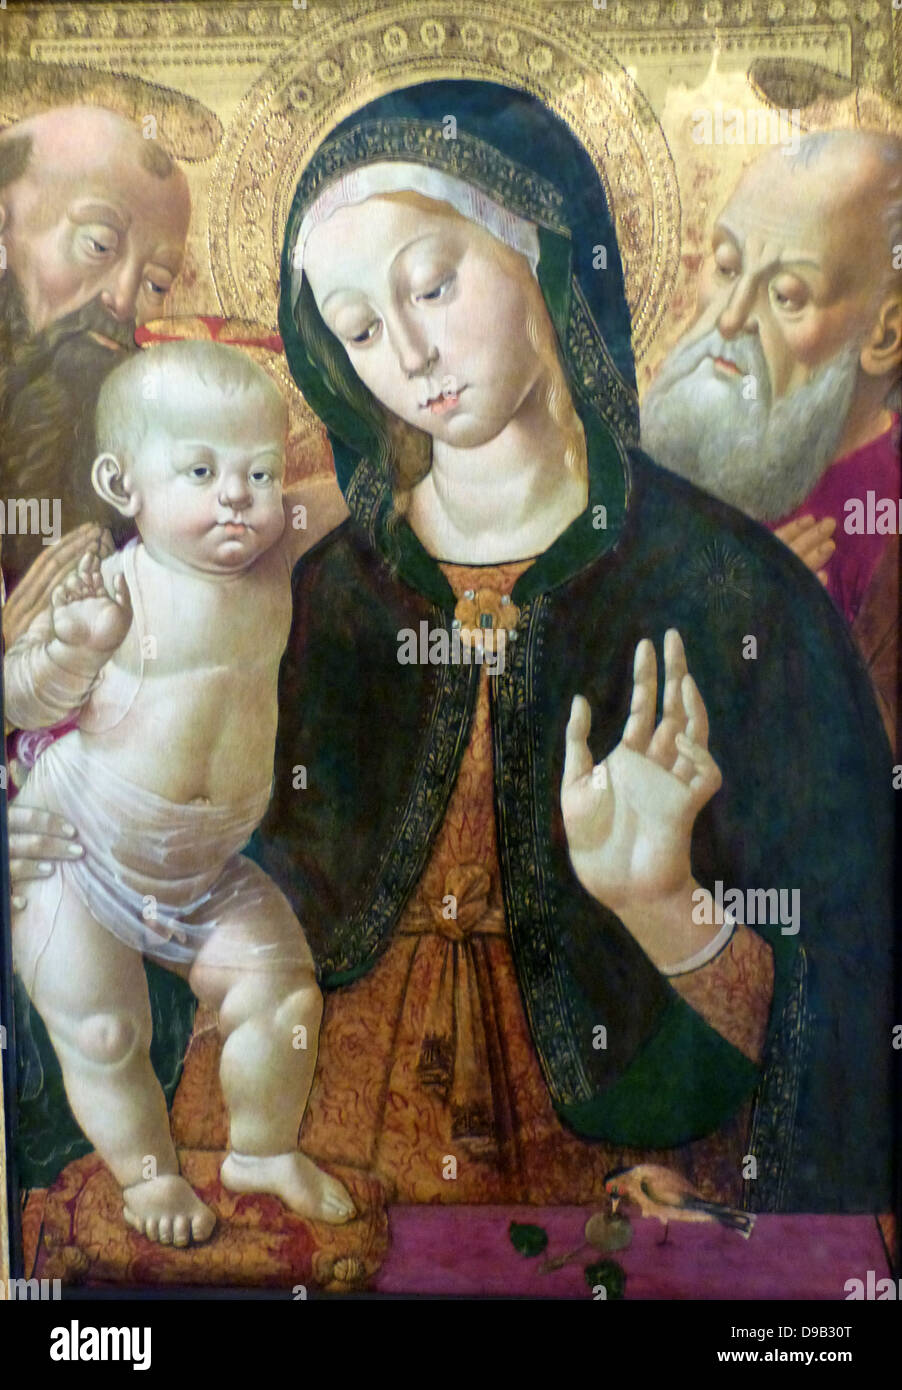 La Vierge et l'enfant avec deux Saints à propos de 1500. Huile sur panneau, Sienne, Italie. Jean Fouquet 1460-1516 env. La vierge du Christ et de la robe d'amortir sont faits de soie la plus chère. Le Chardonneret jaune sur le parapet fait allusion à la mort de Christ. L'oiseau a été cru à tort de manger des épines. Selon la légende, il arracha une épine de la couronne du Christ d'épines et a obtenu un point rouge sur la tête d'une goutte de son inondation. Banque D'Images